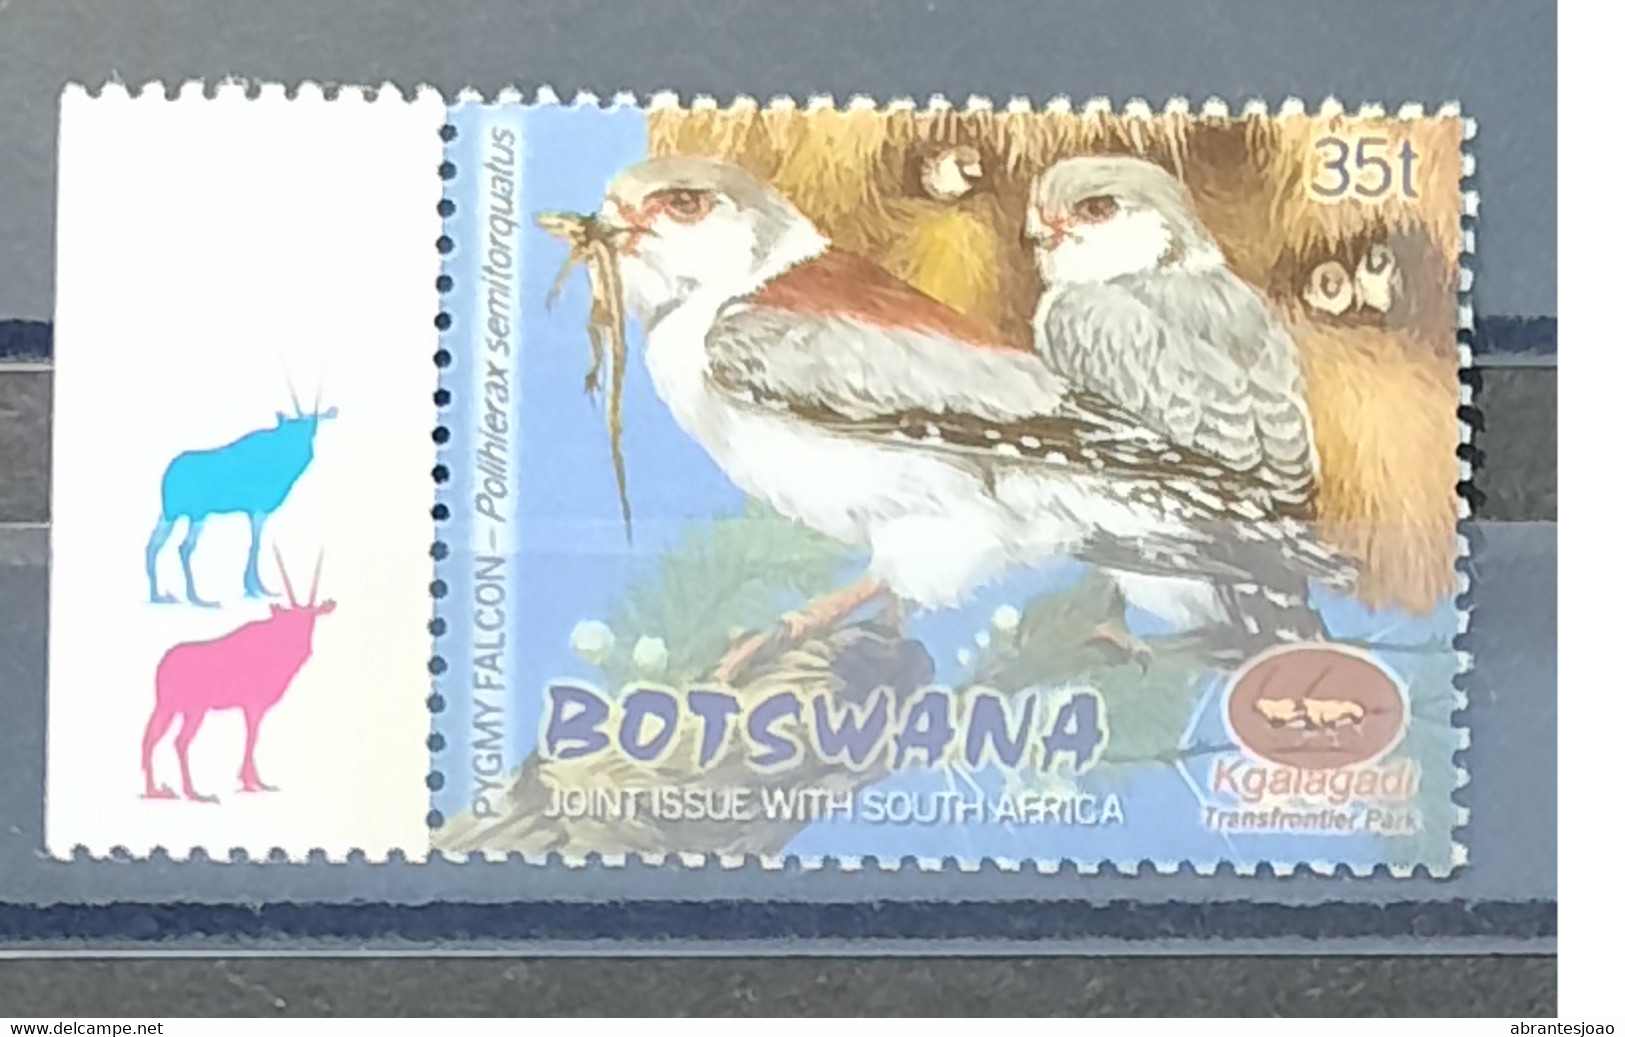 Botswana - 2001 - MNH As Scan - Kgalagadi Park - Birds - 1 Stamp - Botswana (1966-...)